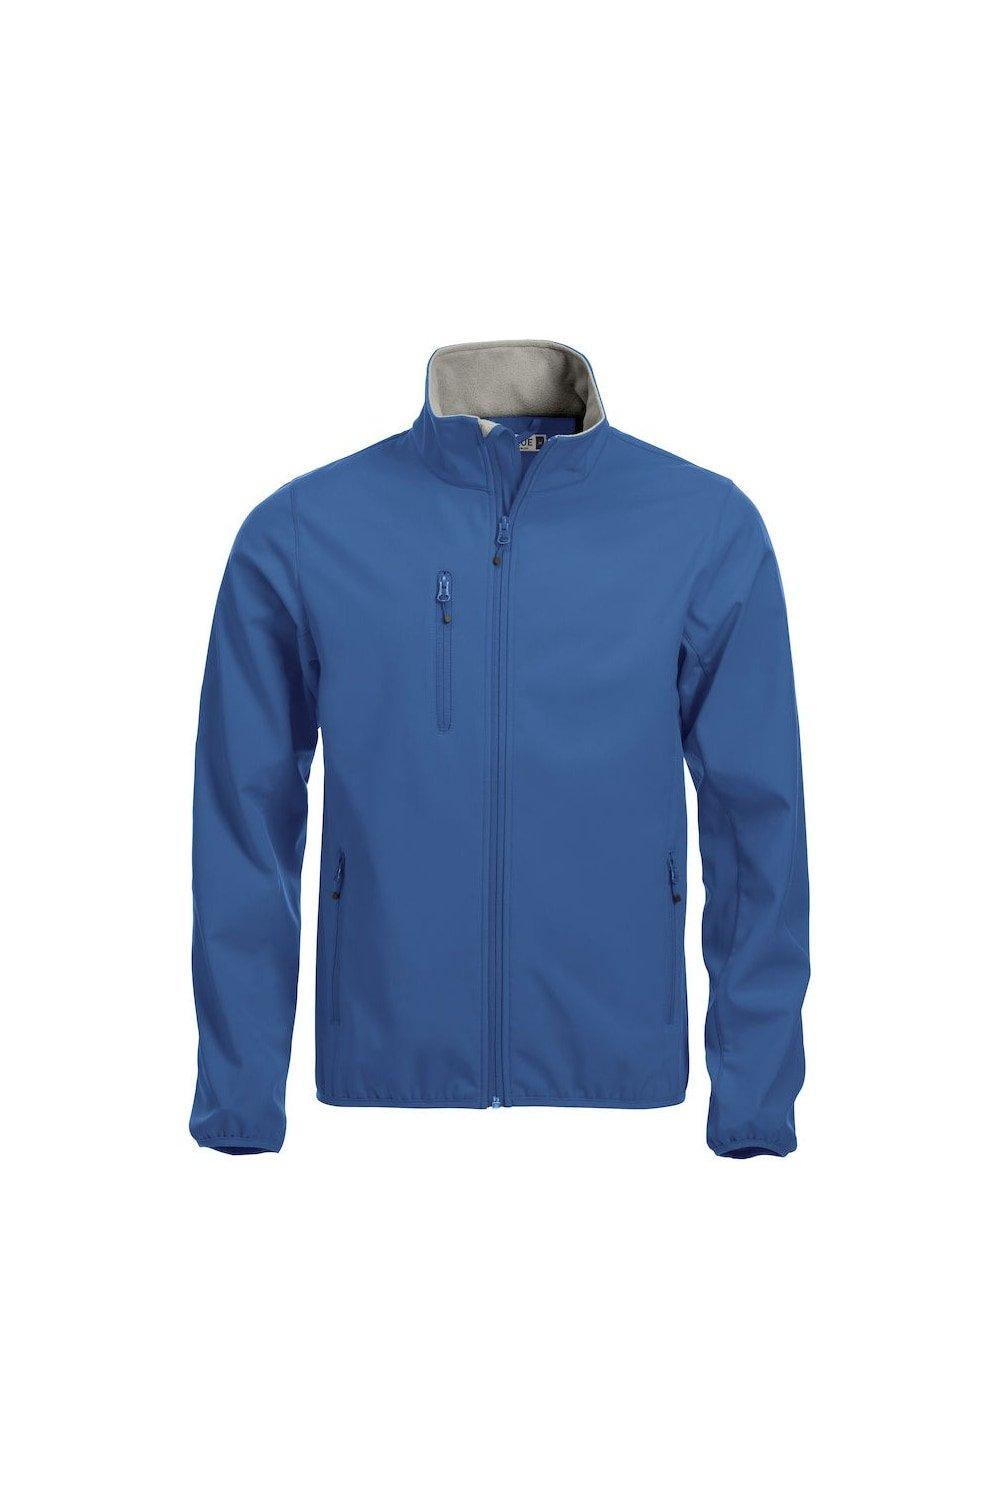 Базовая куртка Soft Shell Clique, синий базовая спортивная сумка clique синий